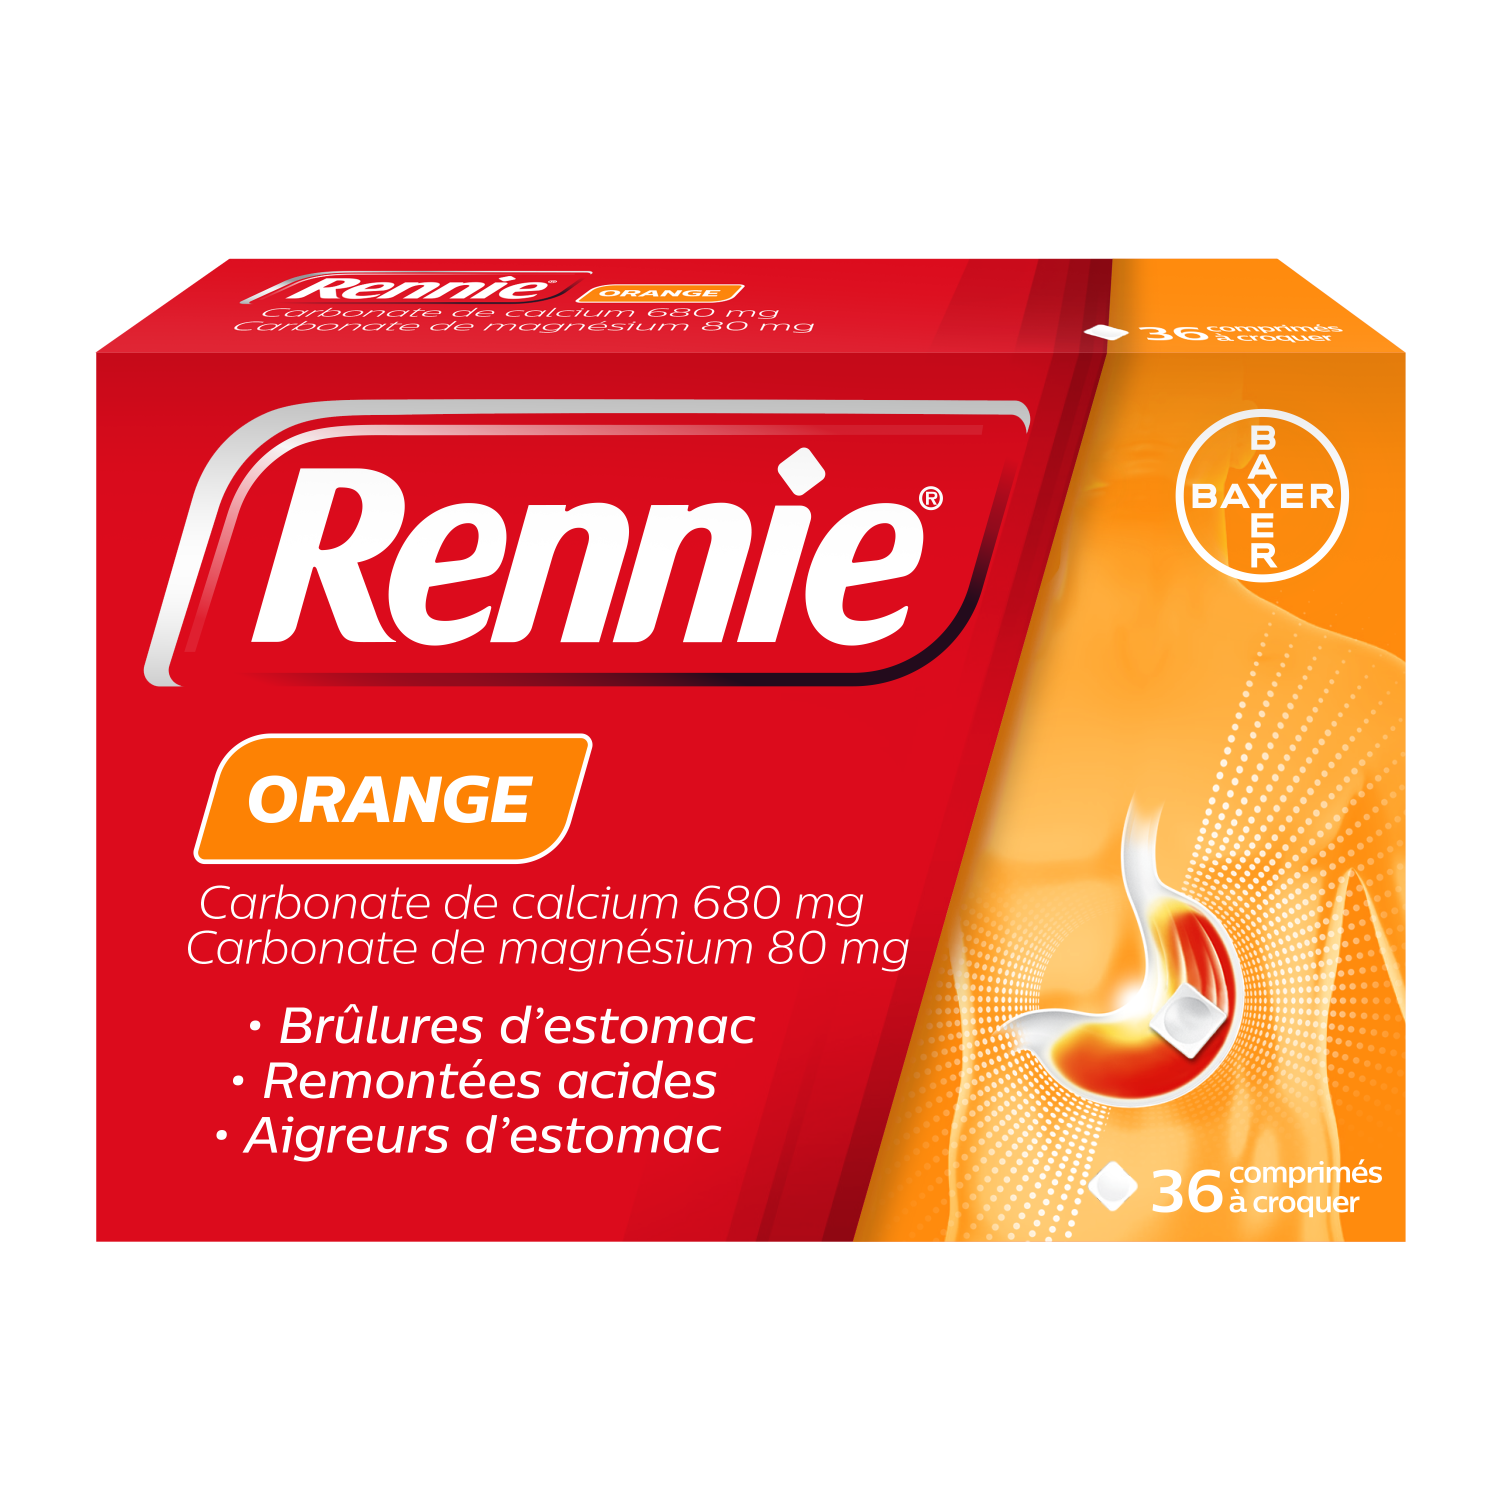 Rennie orange - 36 comprimés à croquer